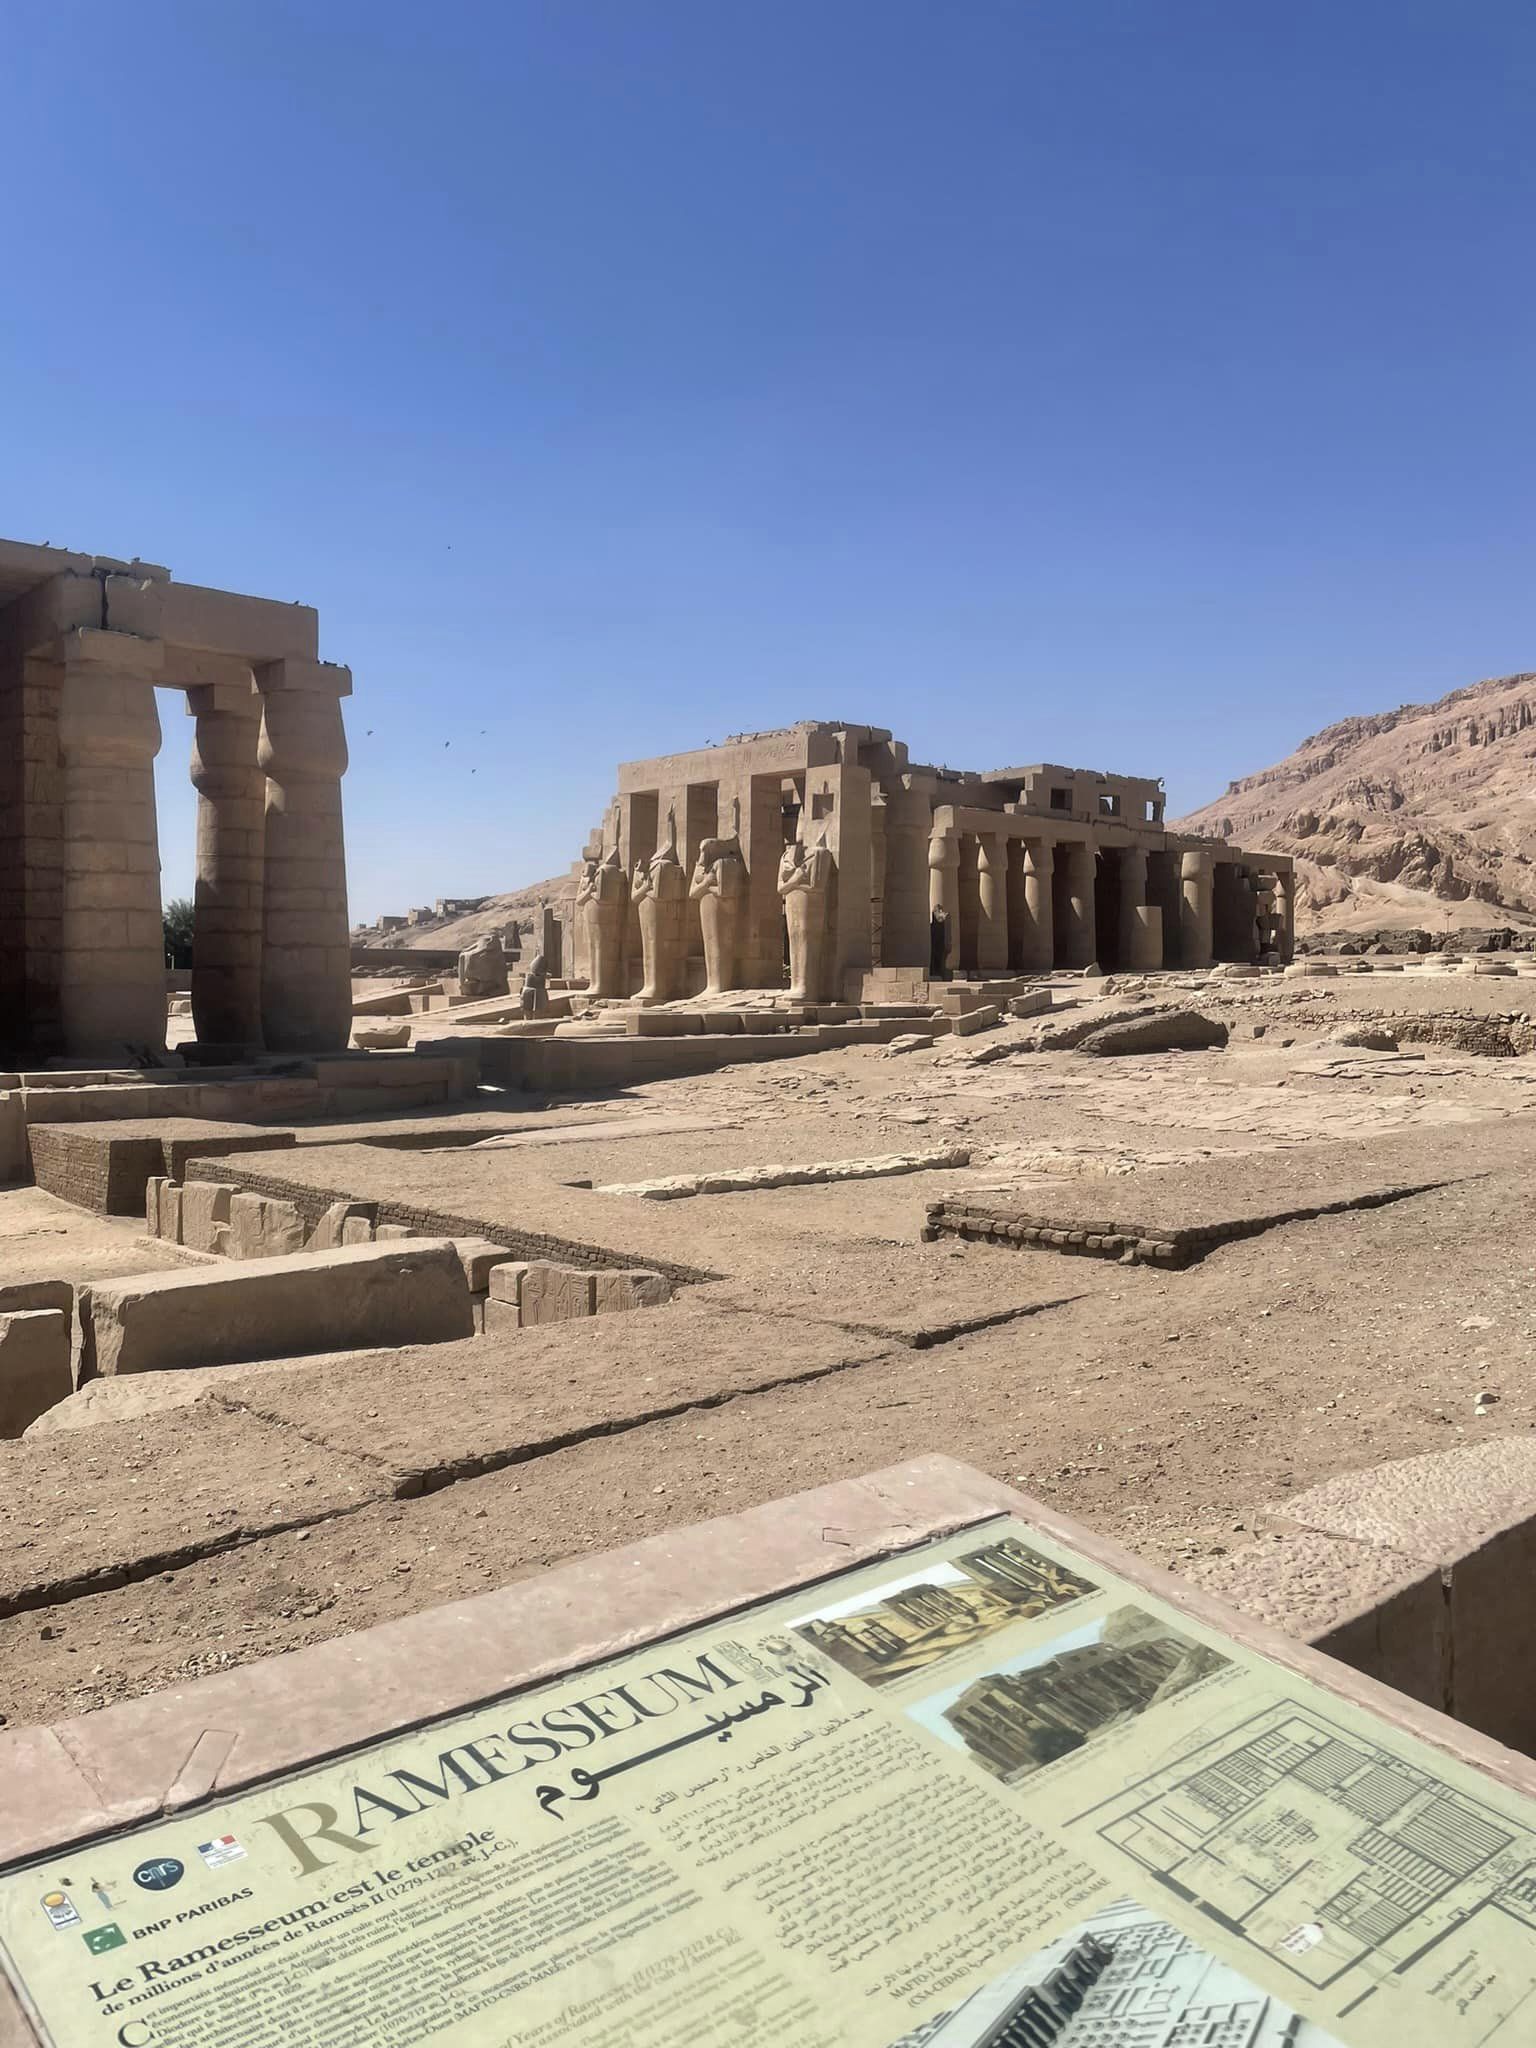 معبد الرمسيوم تحفة فنية بناها الملك رمسيس الثانى بتسجيل وقائع معركة قادش